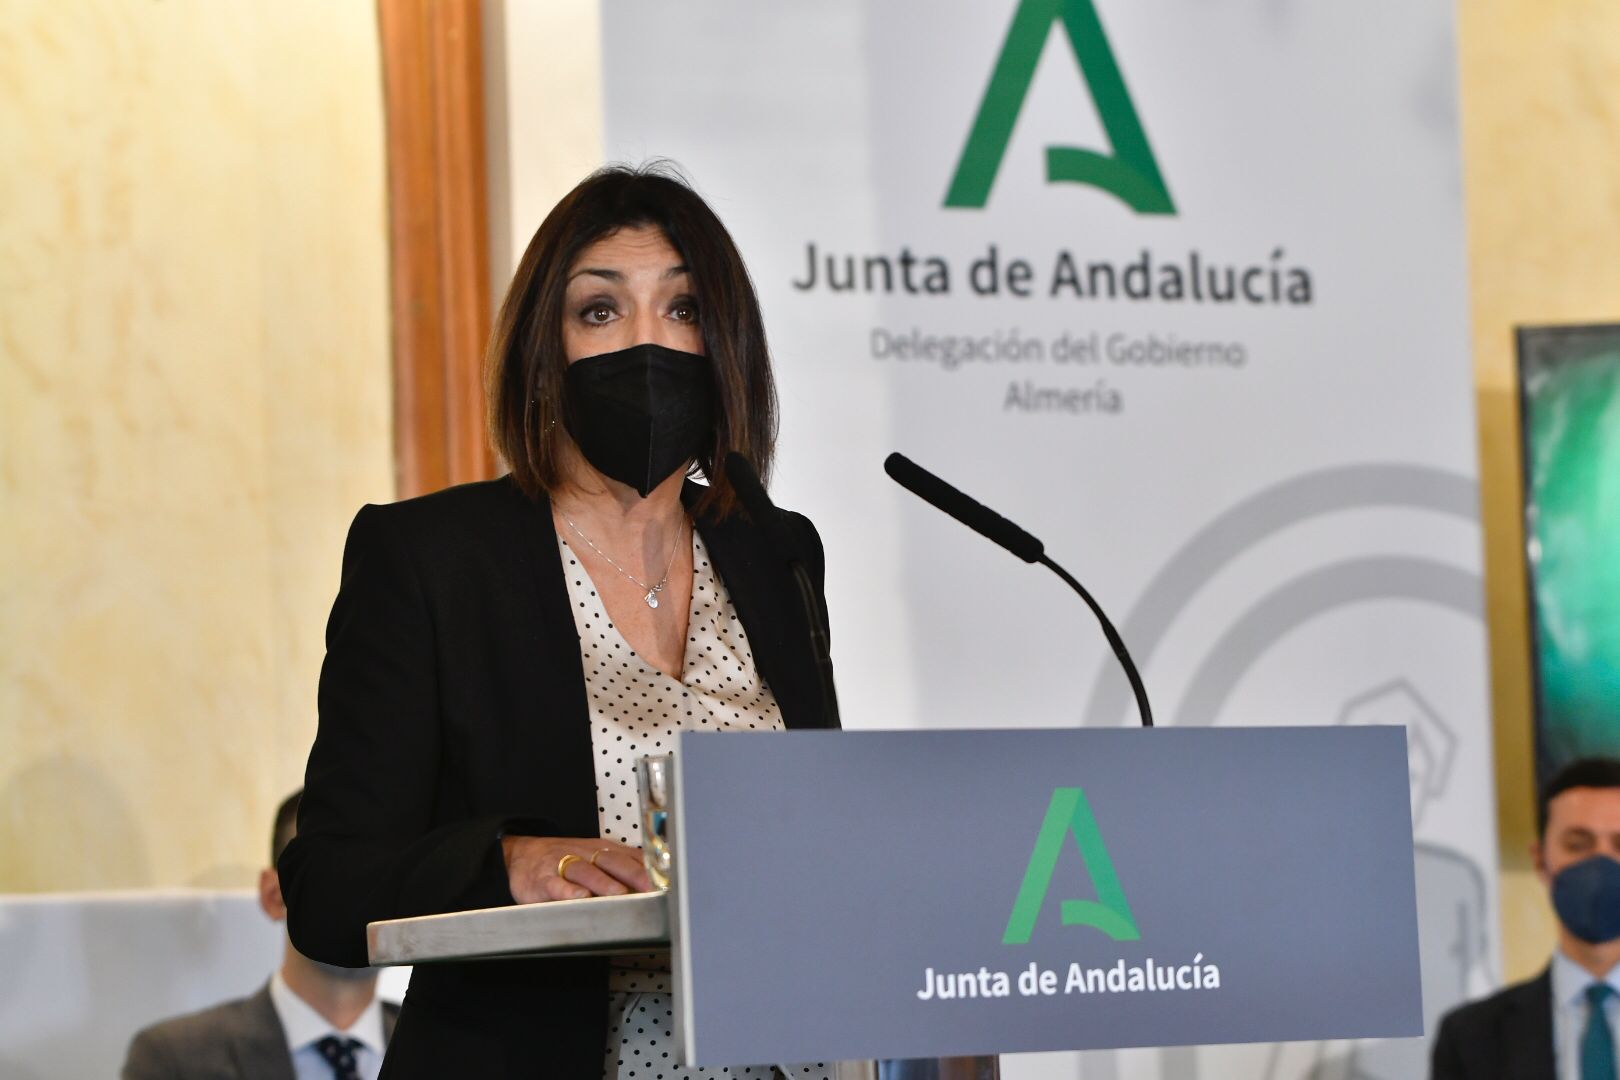   La presidenta del Parlamento, Marta Bosquet, clausura el acto del Da de Andaluca, celebrado en Almera